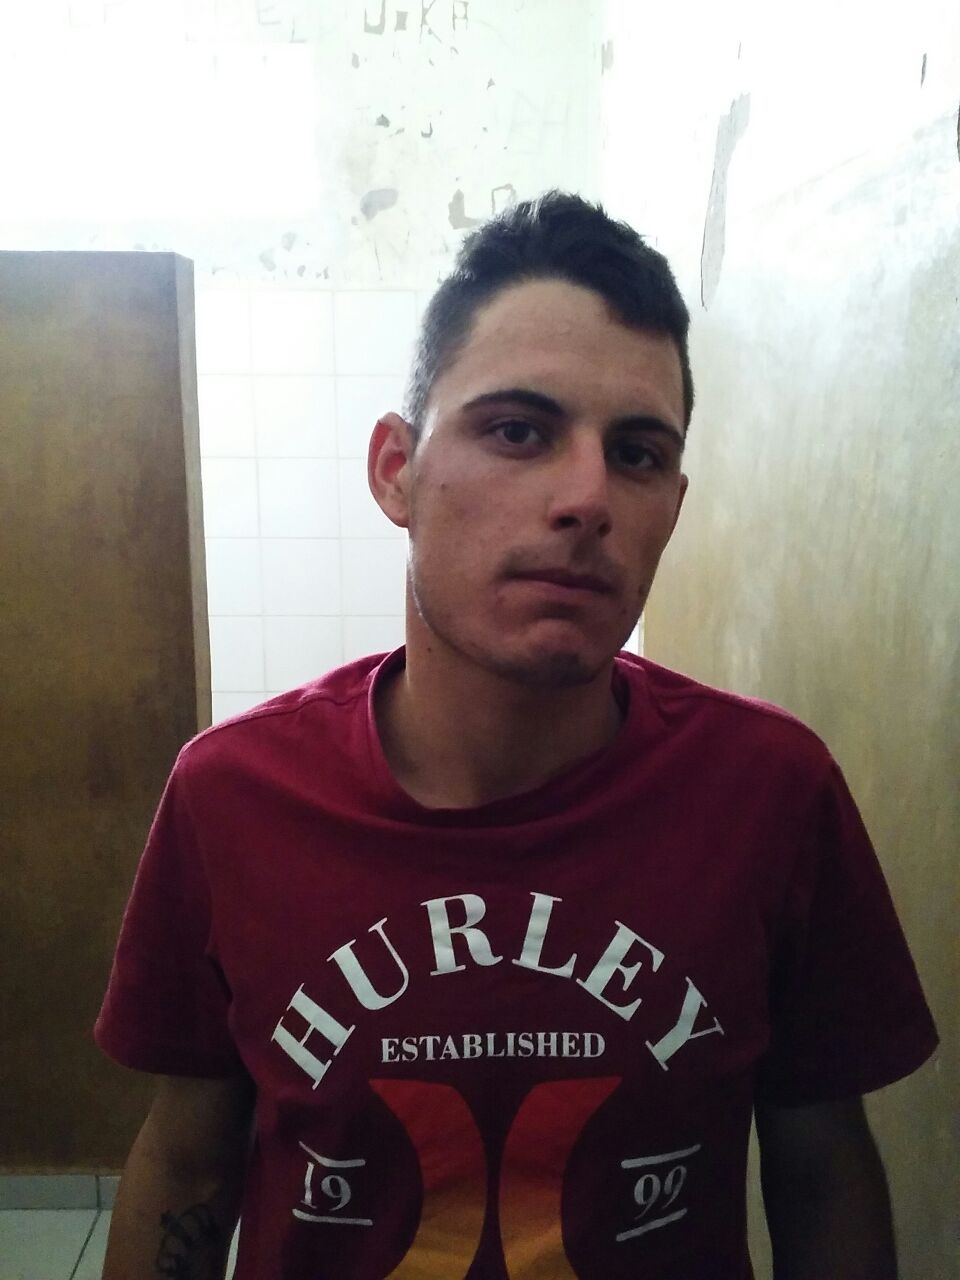 Emerson "Peteca", processado por furtos & roubos e trafcio de drogas em Cambui, atraiu o motoboy para a emboscada na estrada do bairro Ipiranga.